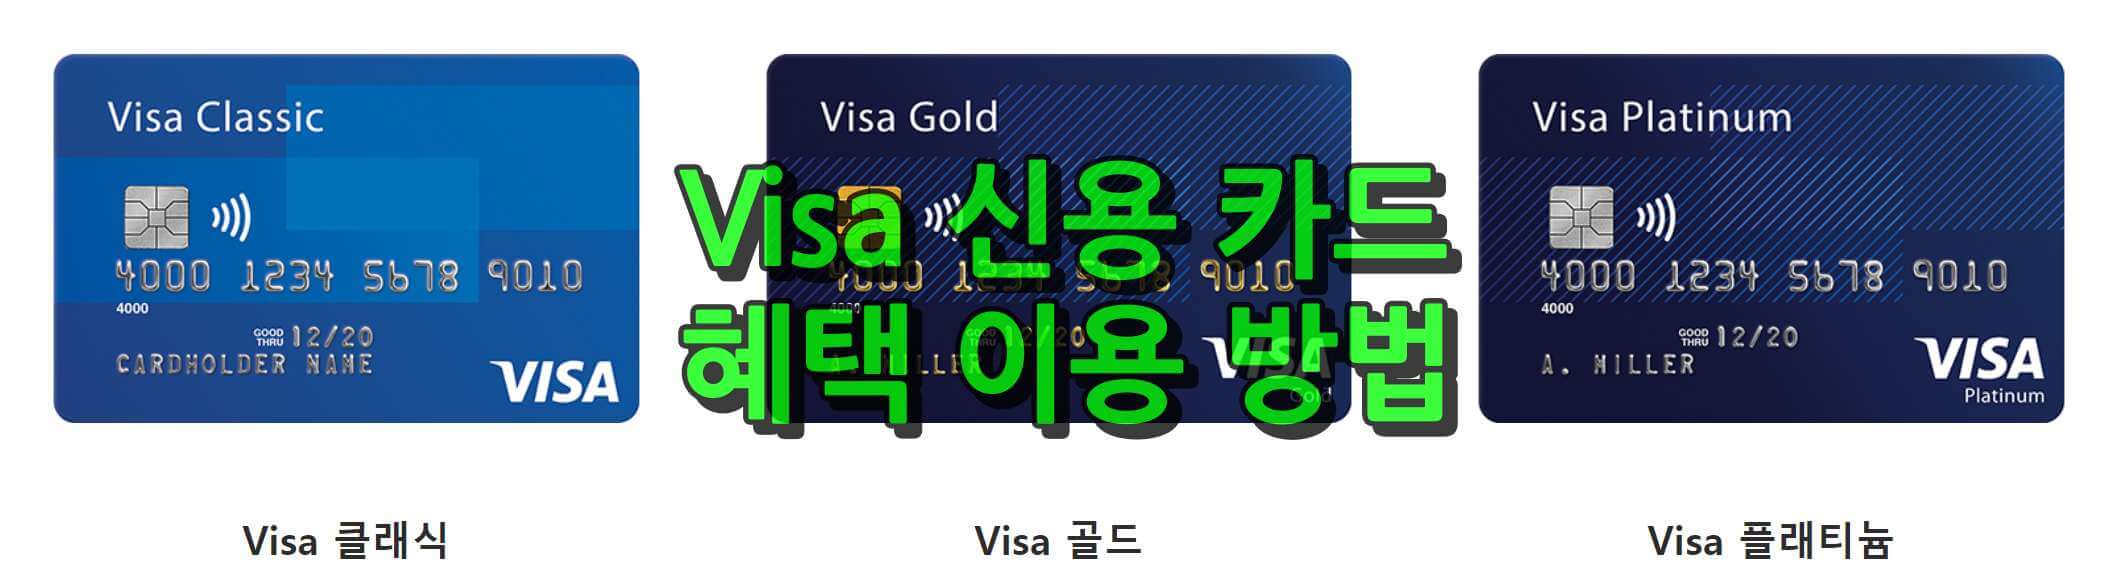 Visa 신용 카드 혜택 및 이용 방법